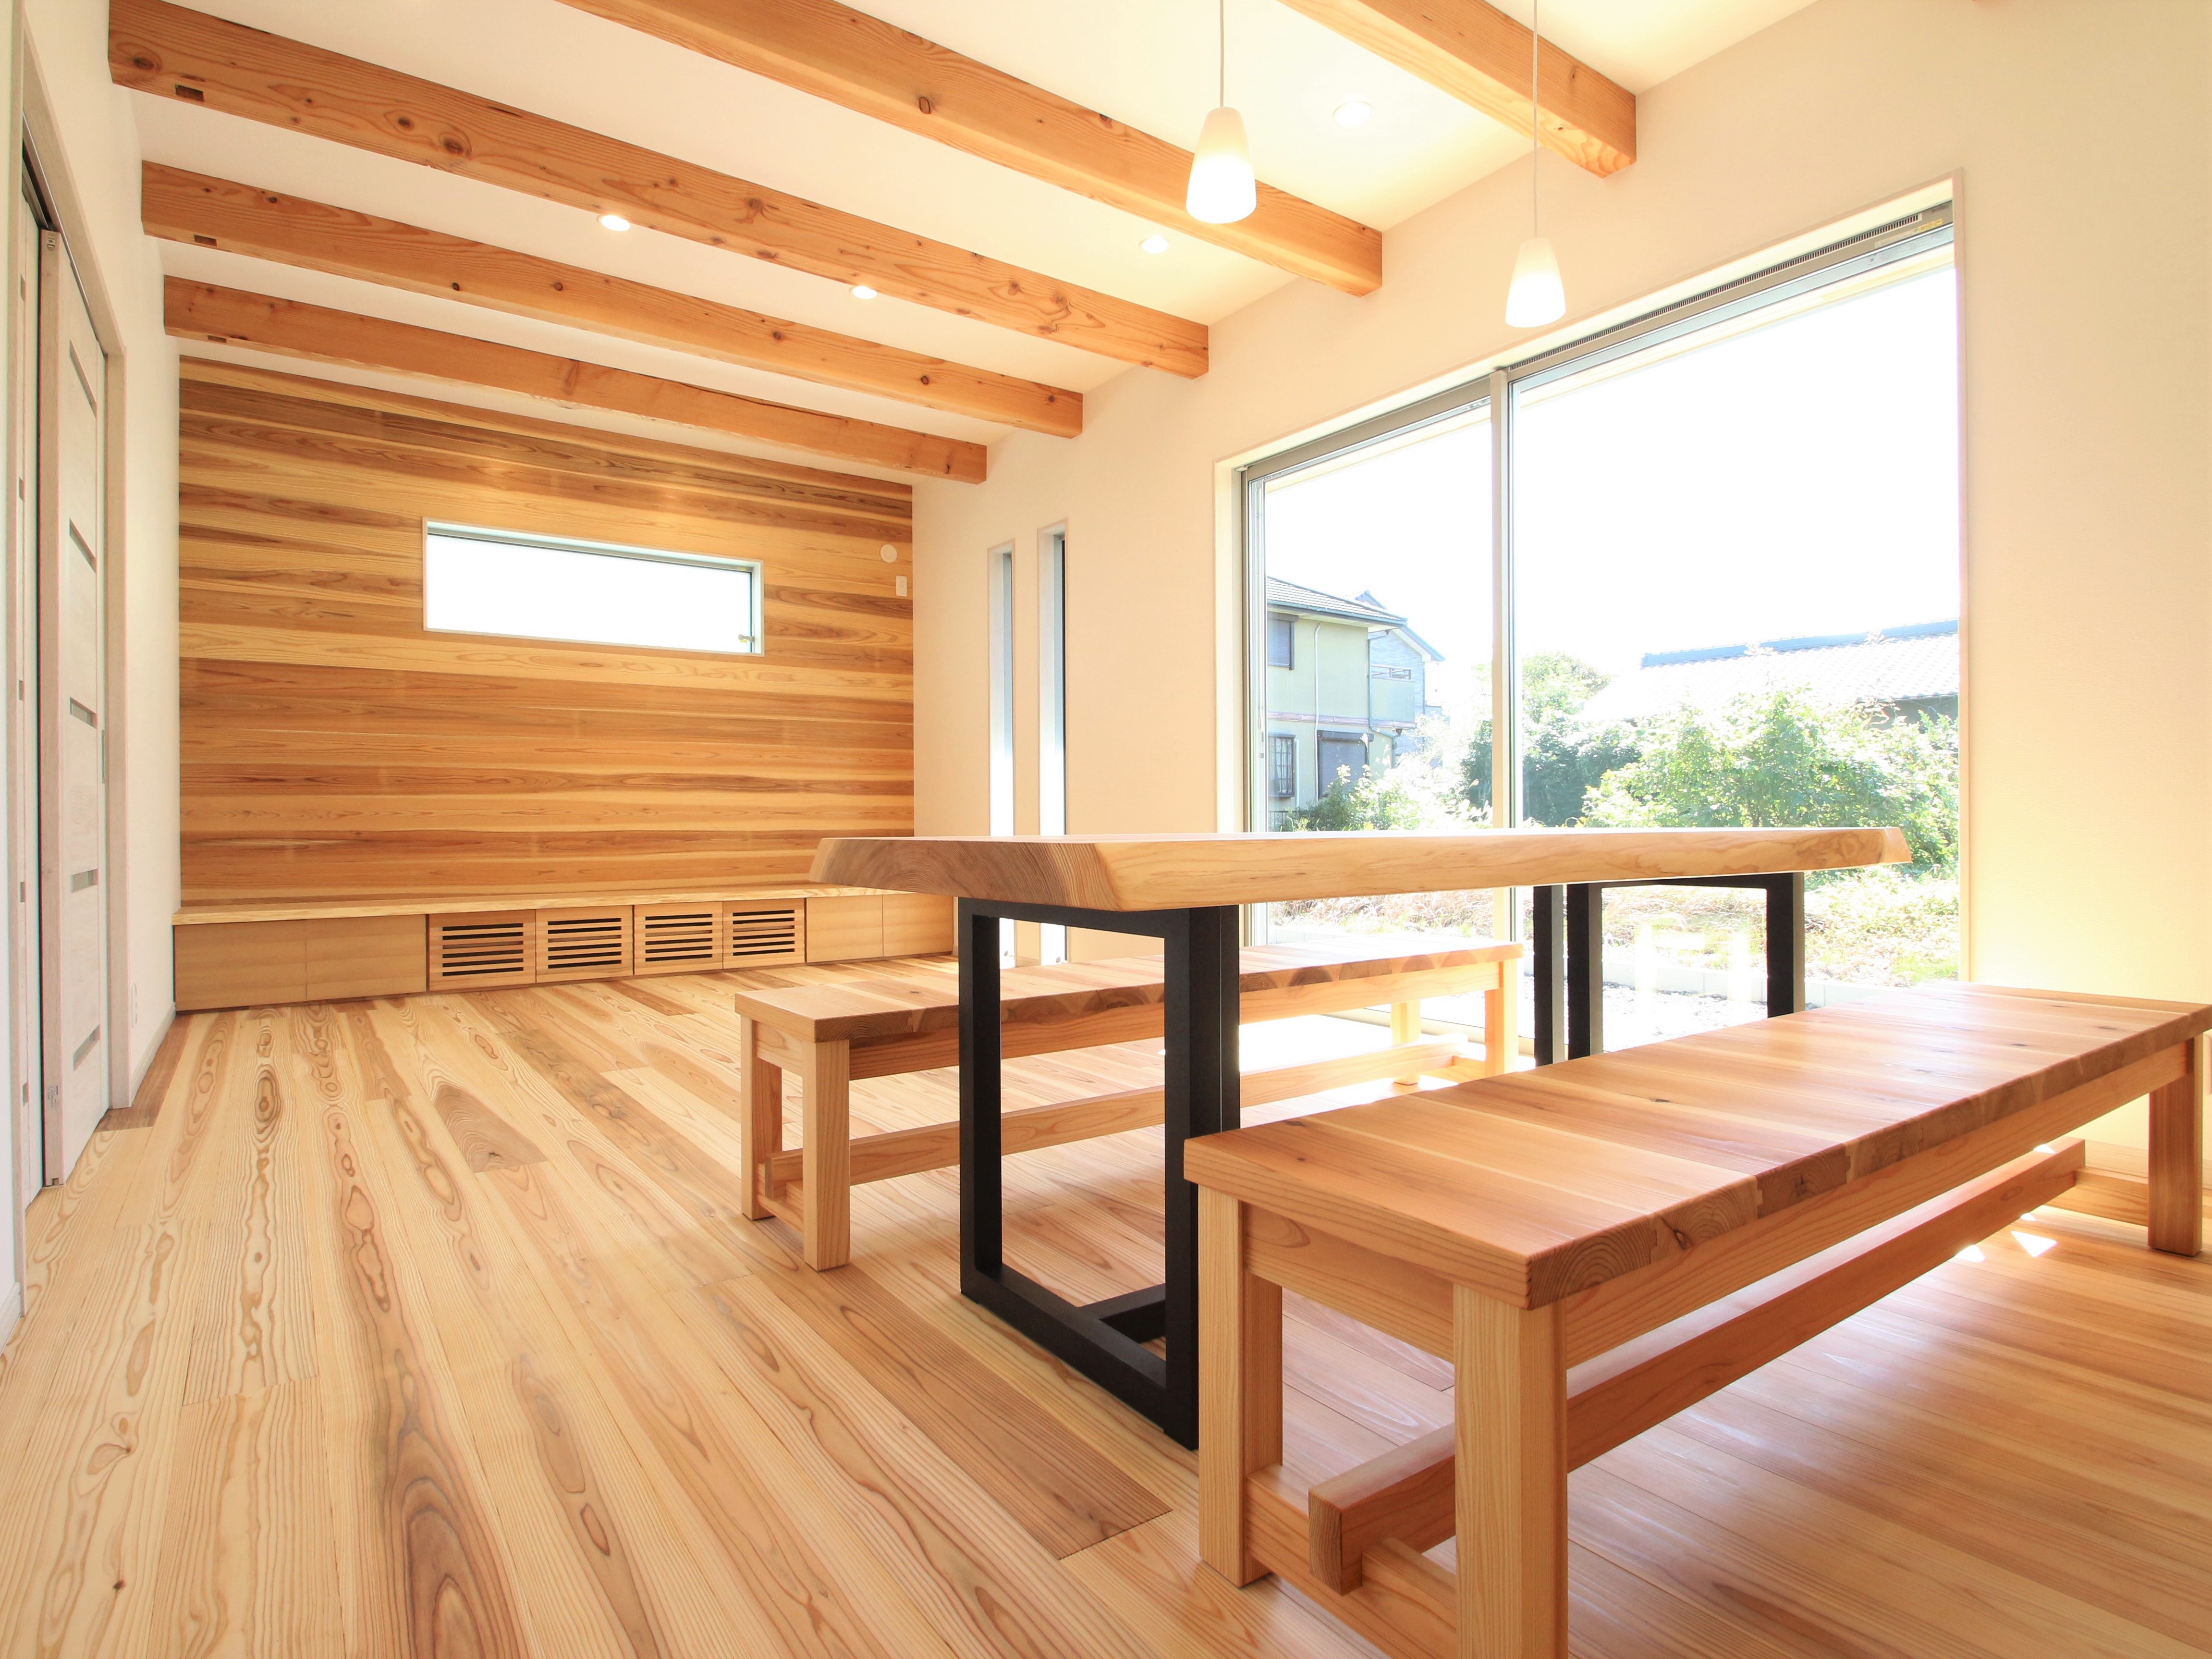 手作りのダイニングテーブルとベンチ<br />
アイアンの素材と木の雰囲気が素敵なオンリーワン家具です！